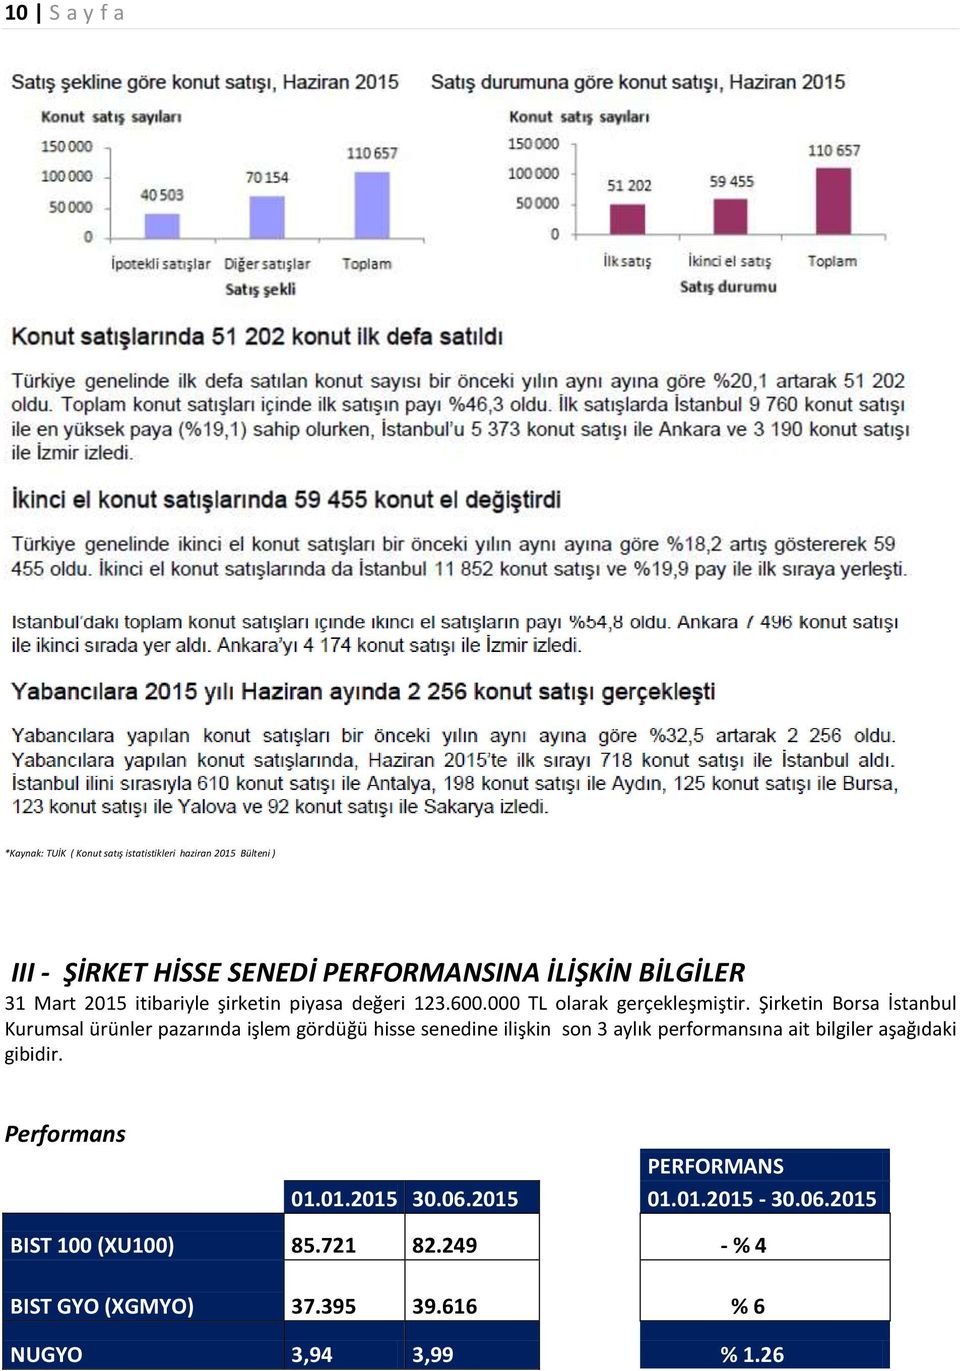 Şirketin Borsa İstanbul Kurumsal ürünler pazarında işlem gördüğü hisse senedine ilişkin son 3 aylık performansına ait bilgiler